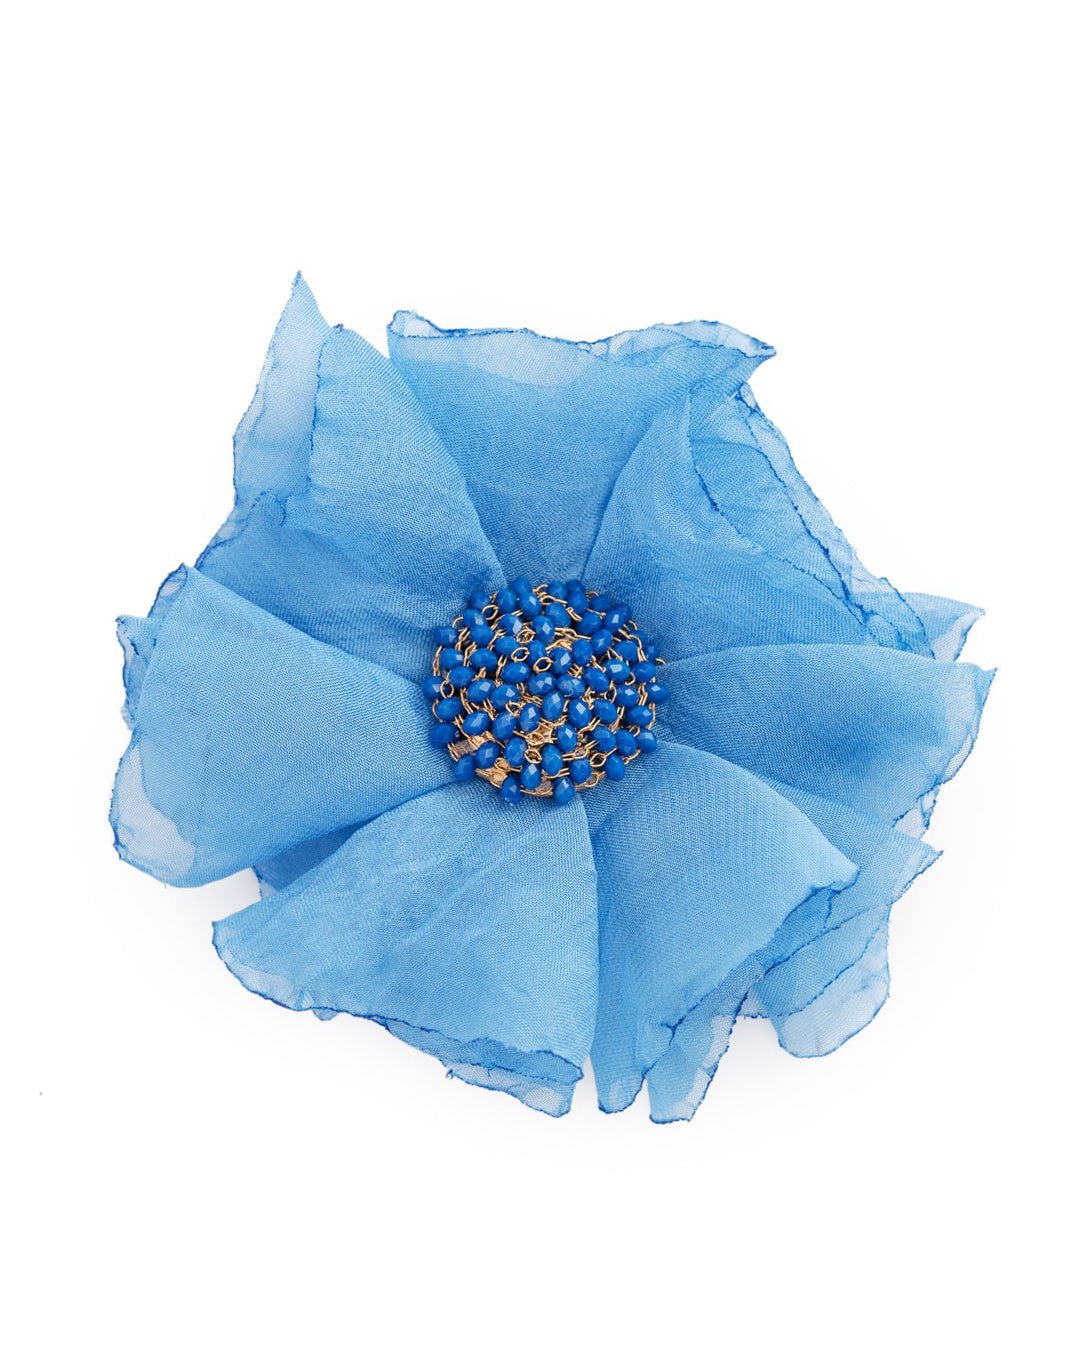 Spilla in tessuto a forma di fiore con microcristalli azzurri - Mya Accessories